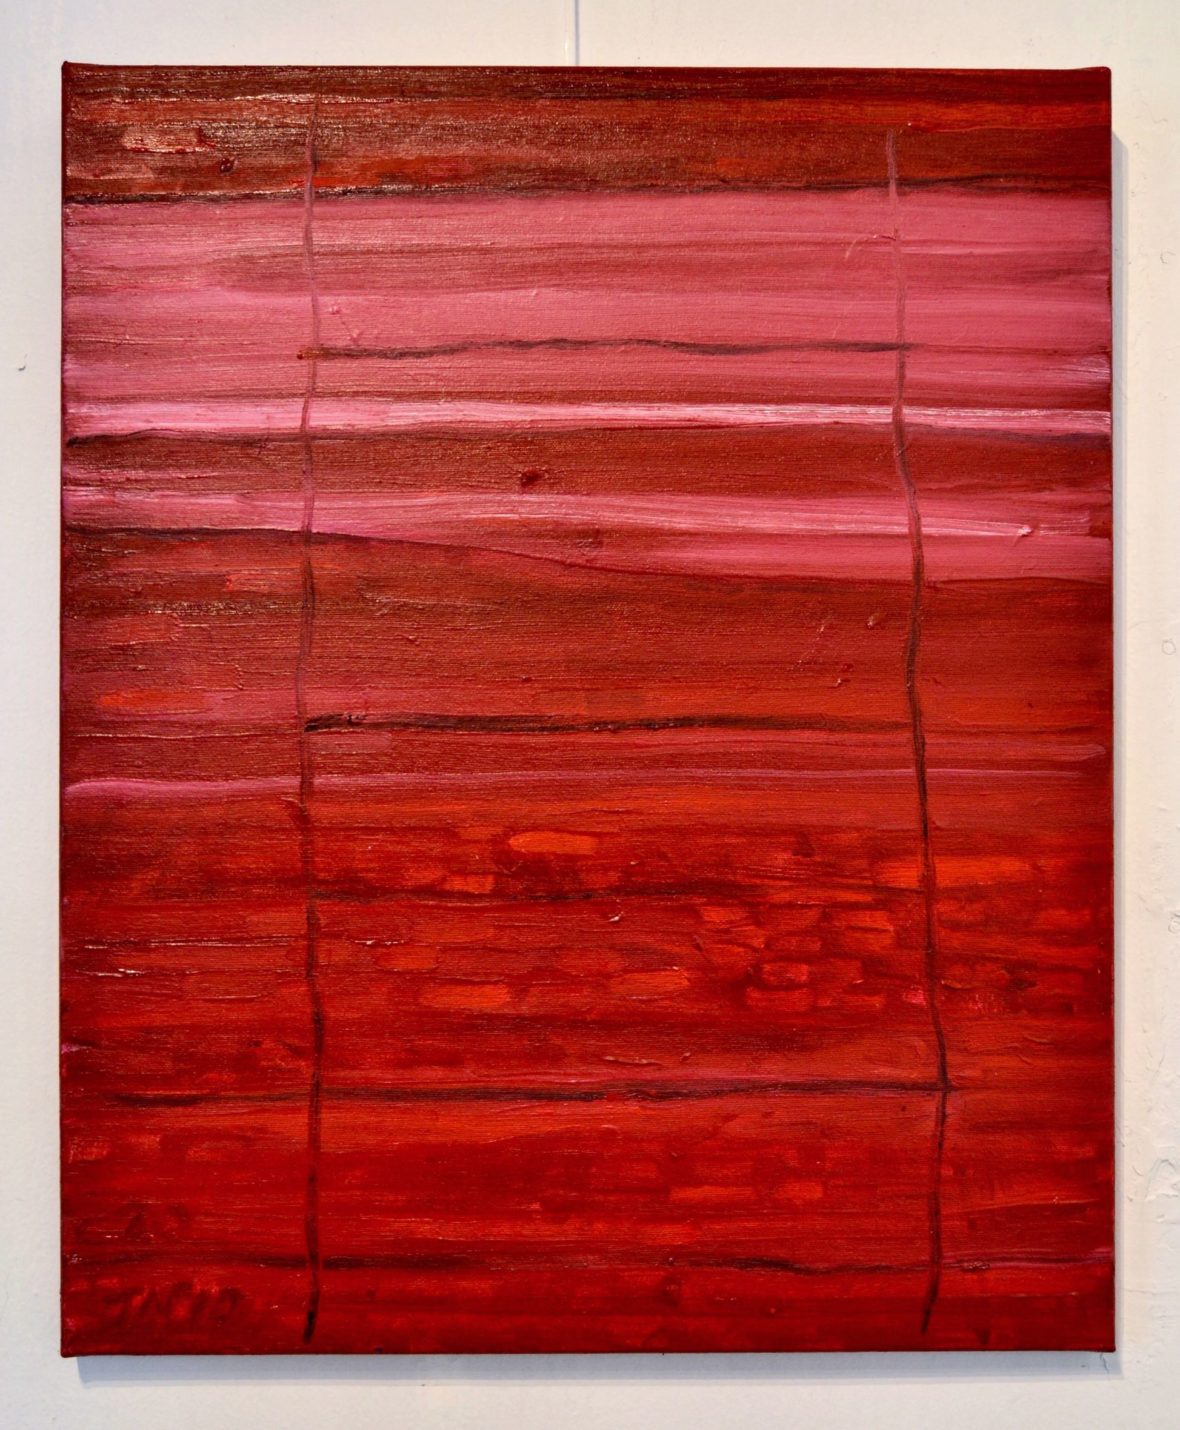 Punainen seinämä/Red panel